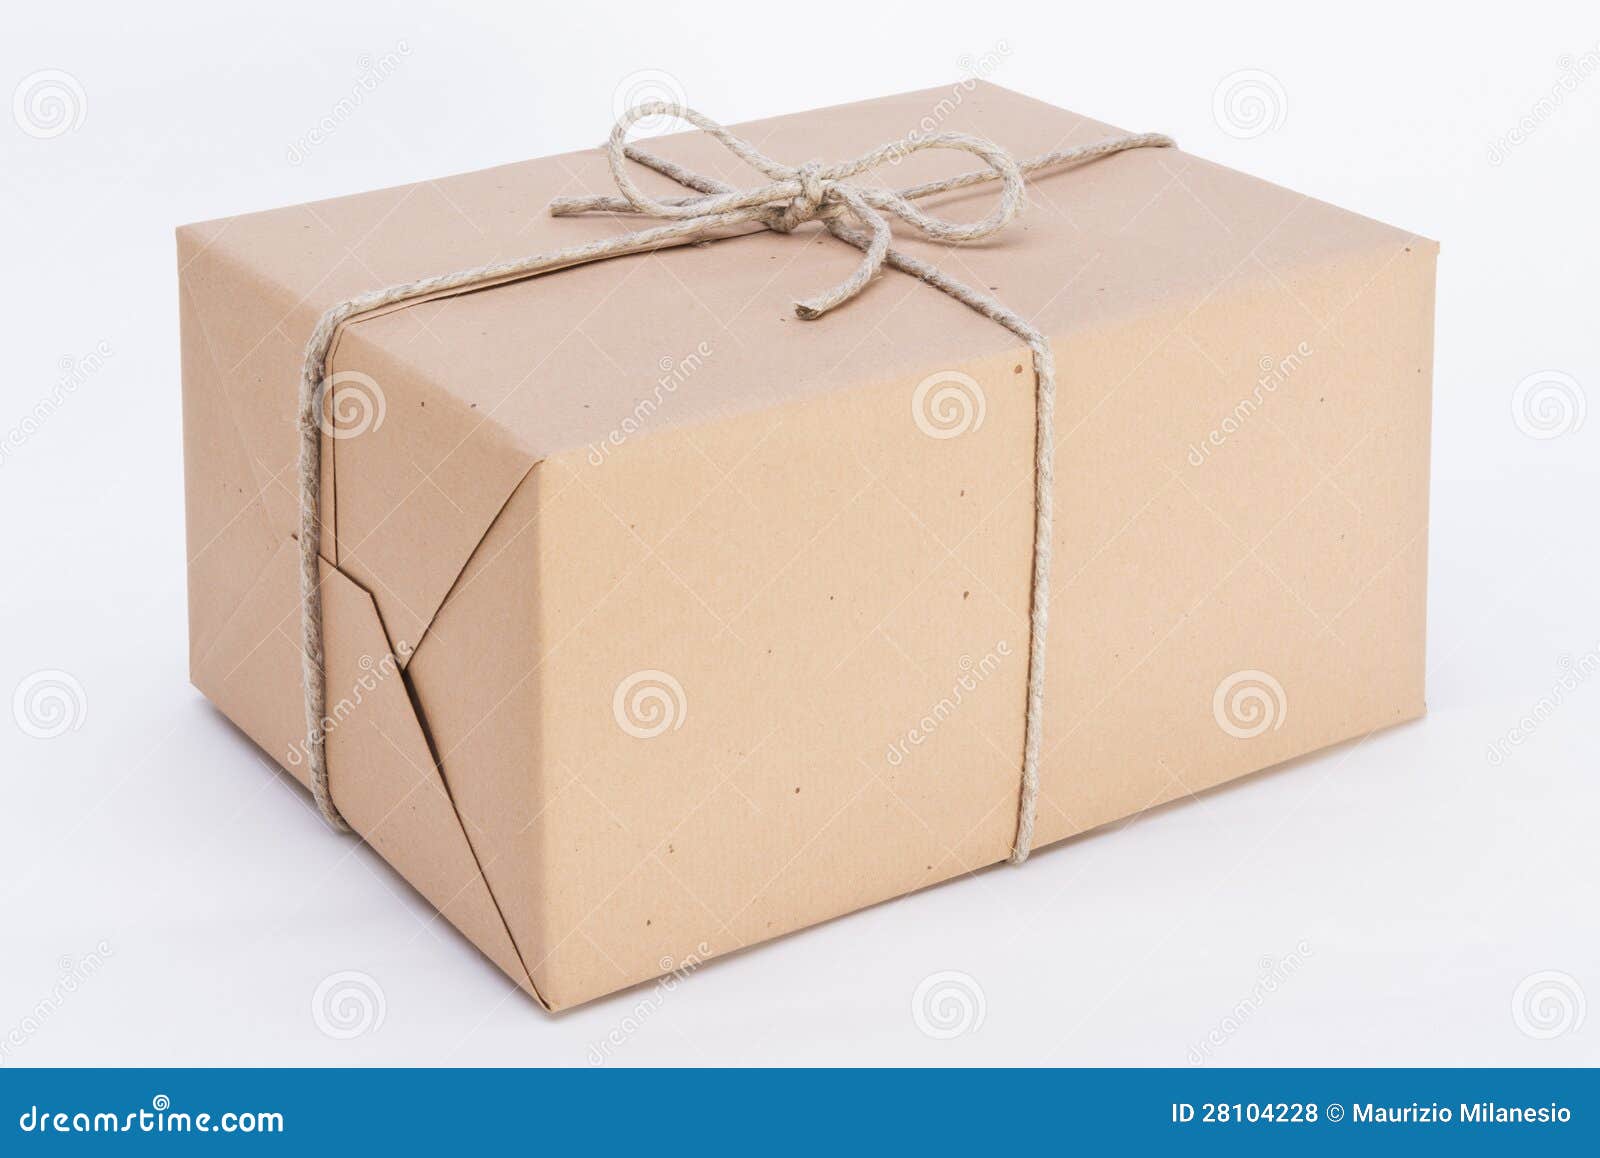 Pakket Klaar Voor Verzending Stock Foto - Image of achtergrond: 28104228